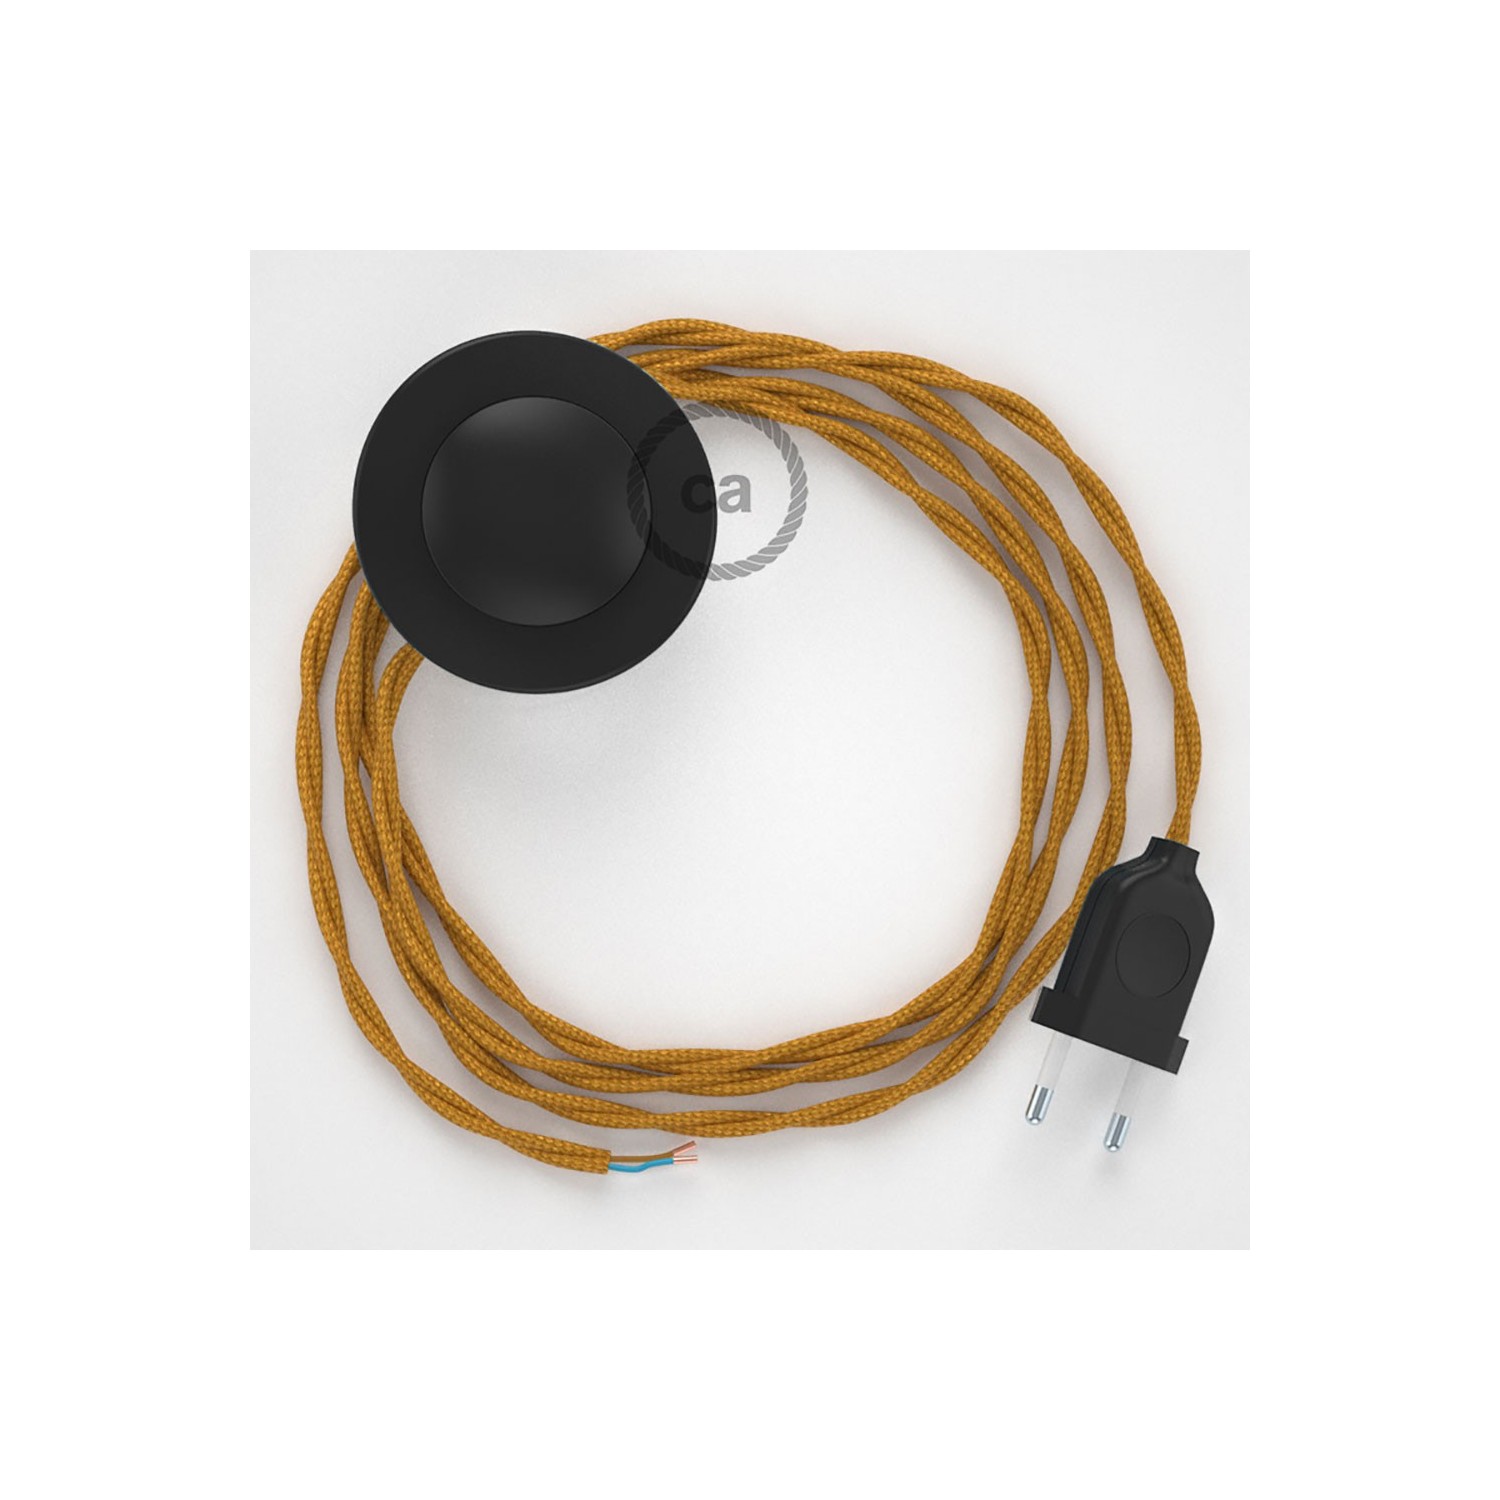 Cordon pour lampadaire, câble TM05 Effet Soie Doré 3 m. Choisissez la couleur de la fiche et de l'interrupteur!